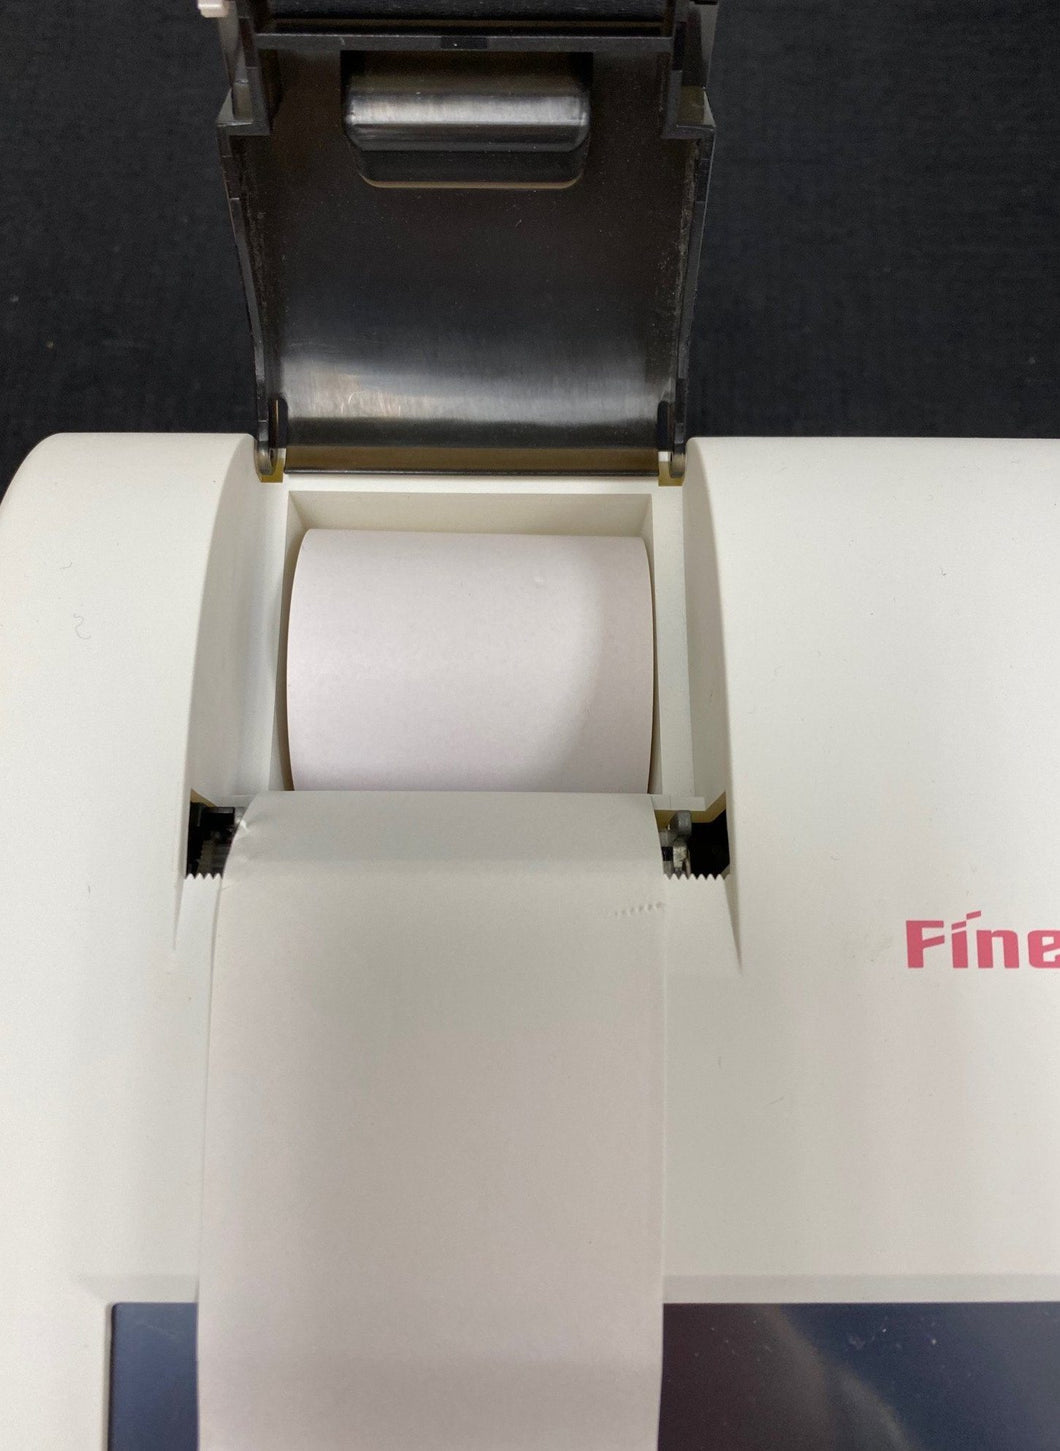 QuickScan 1000/ Finecare Printer Paper - Canine P4 Dot Com